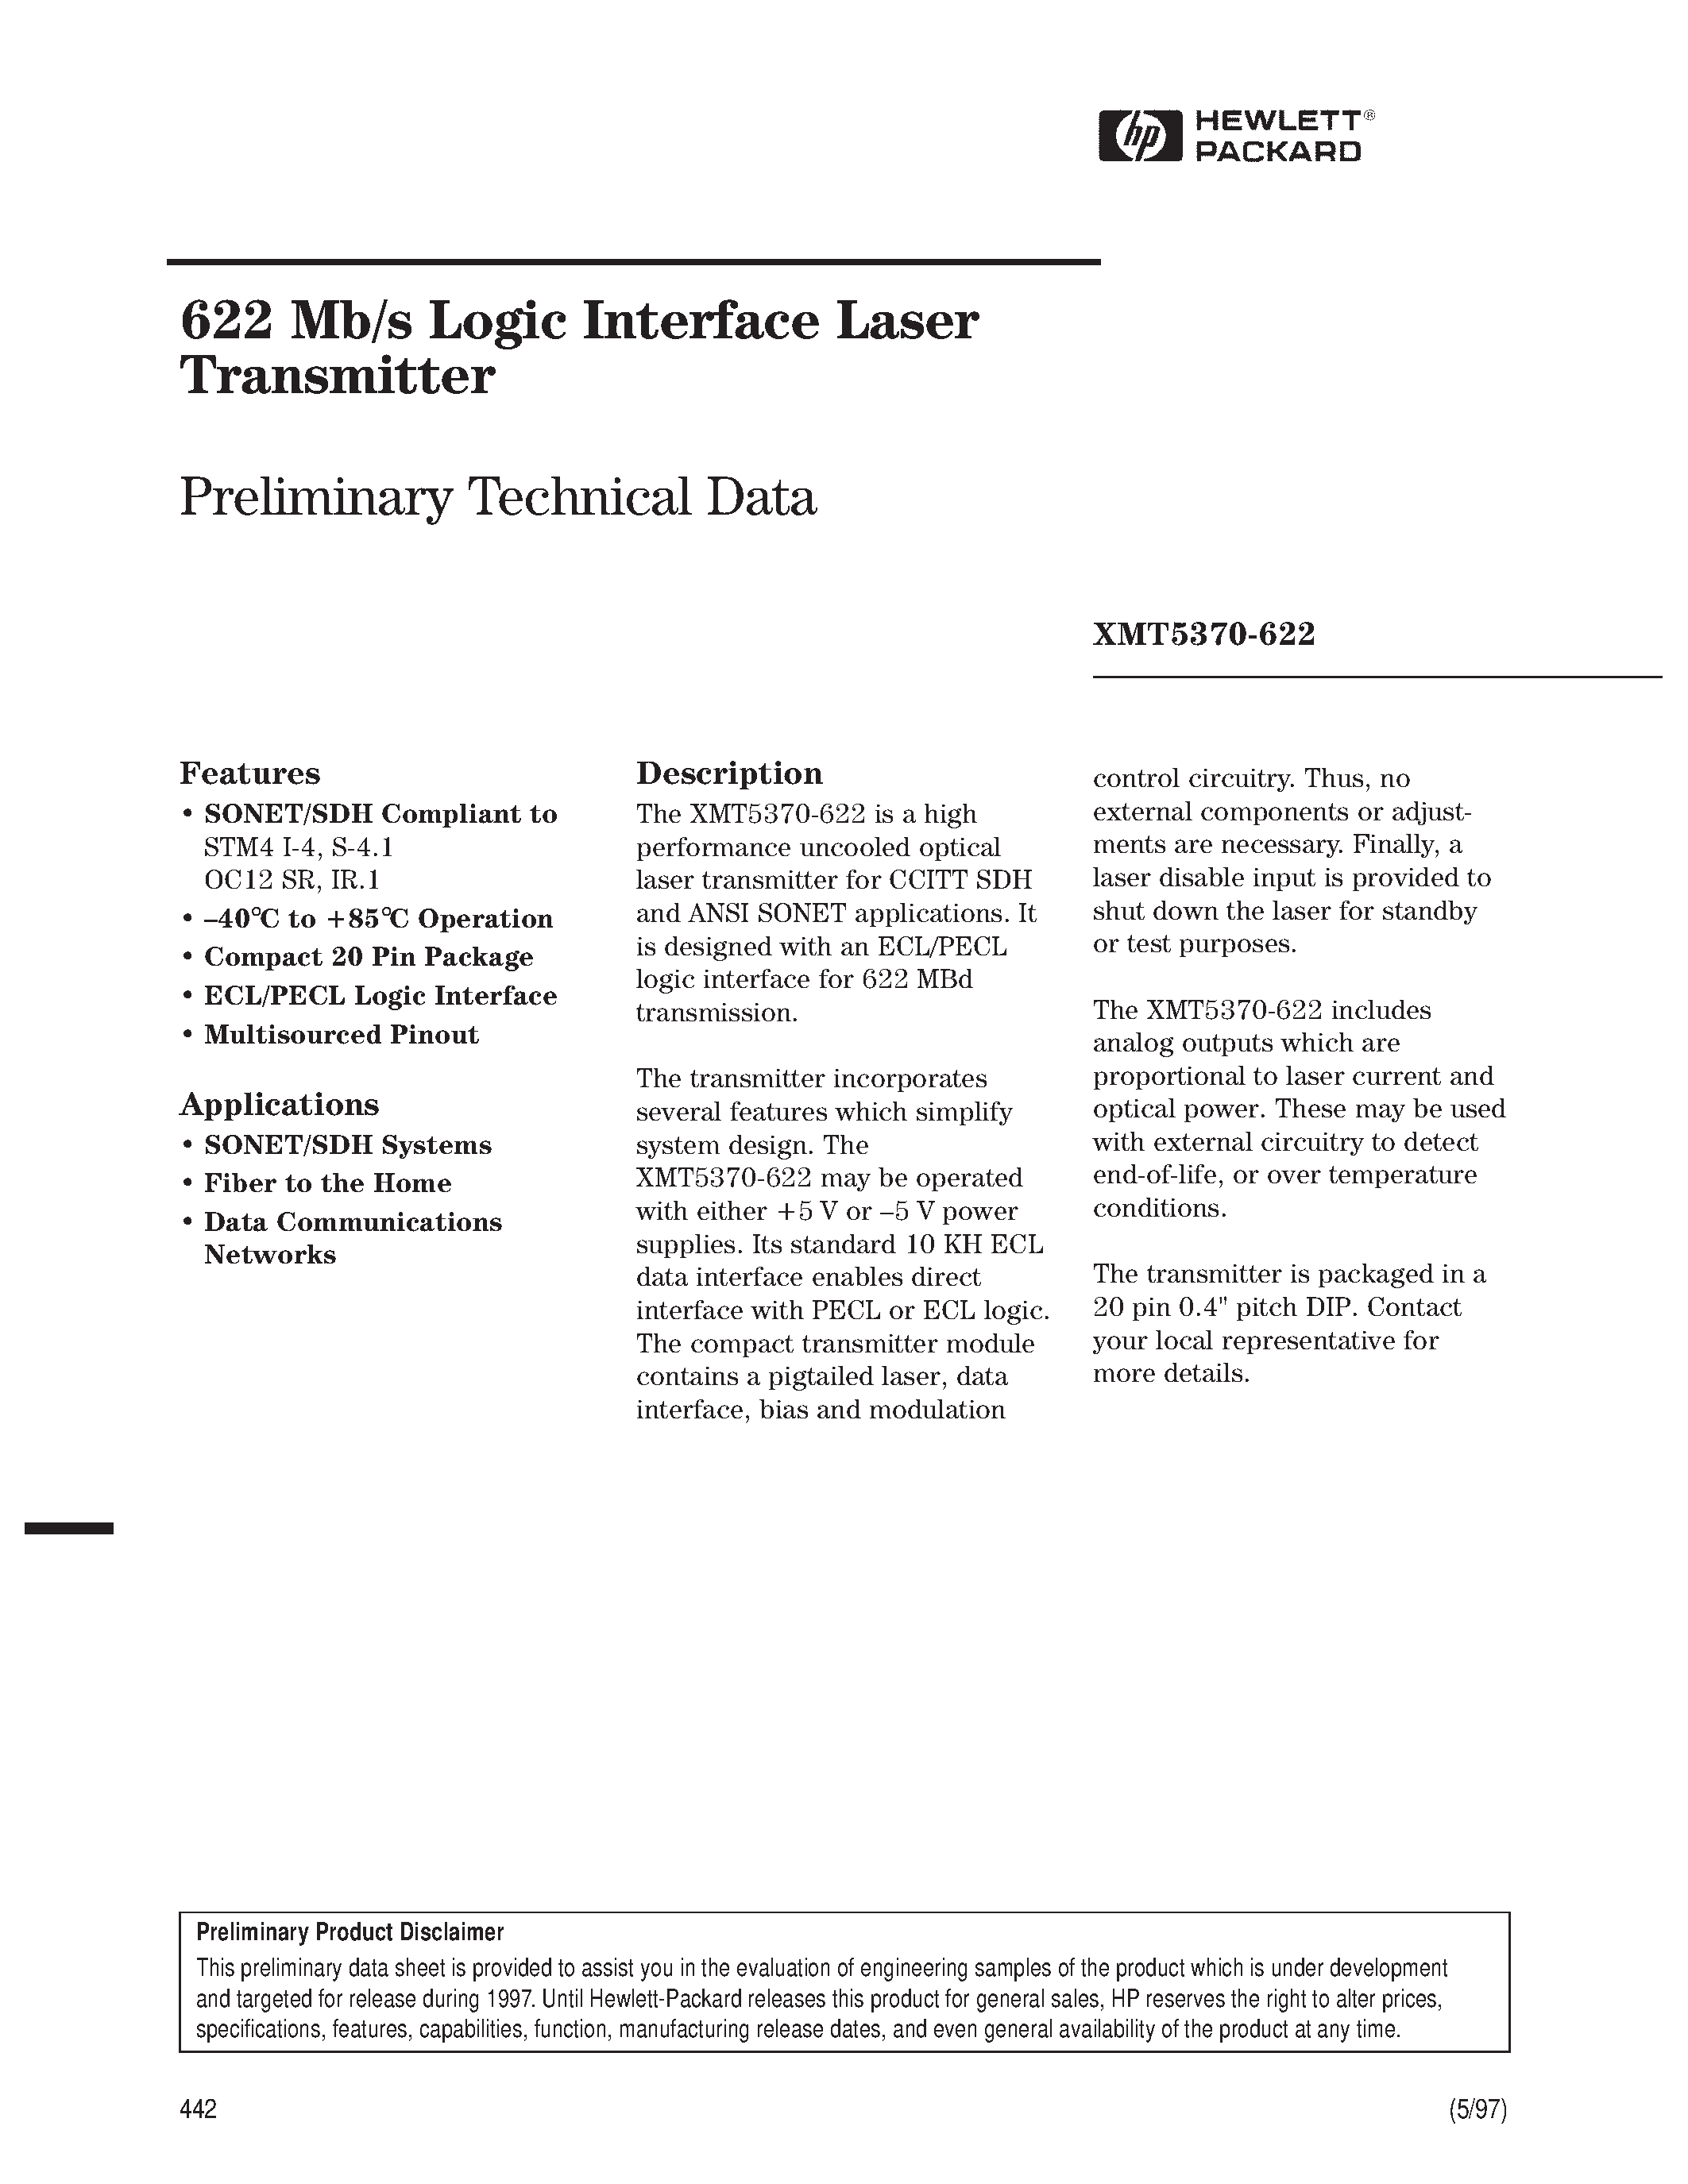 Datasheet XMT5160B-622-FP - 622 Mb/s Logic Interface Laser Transmitter page 1